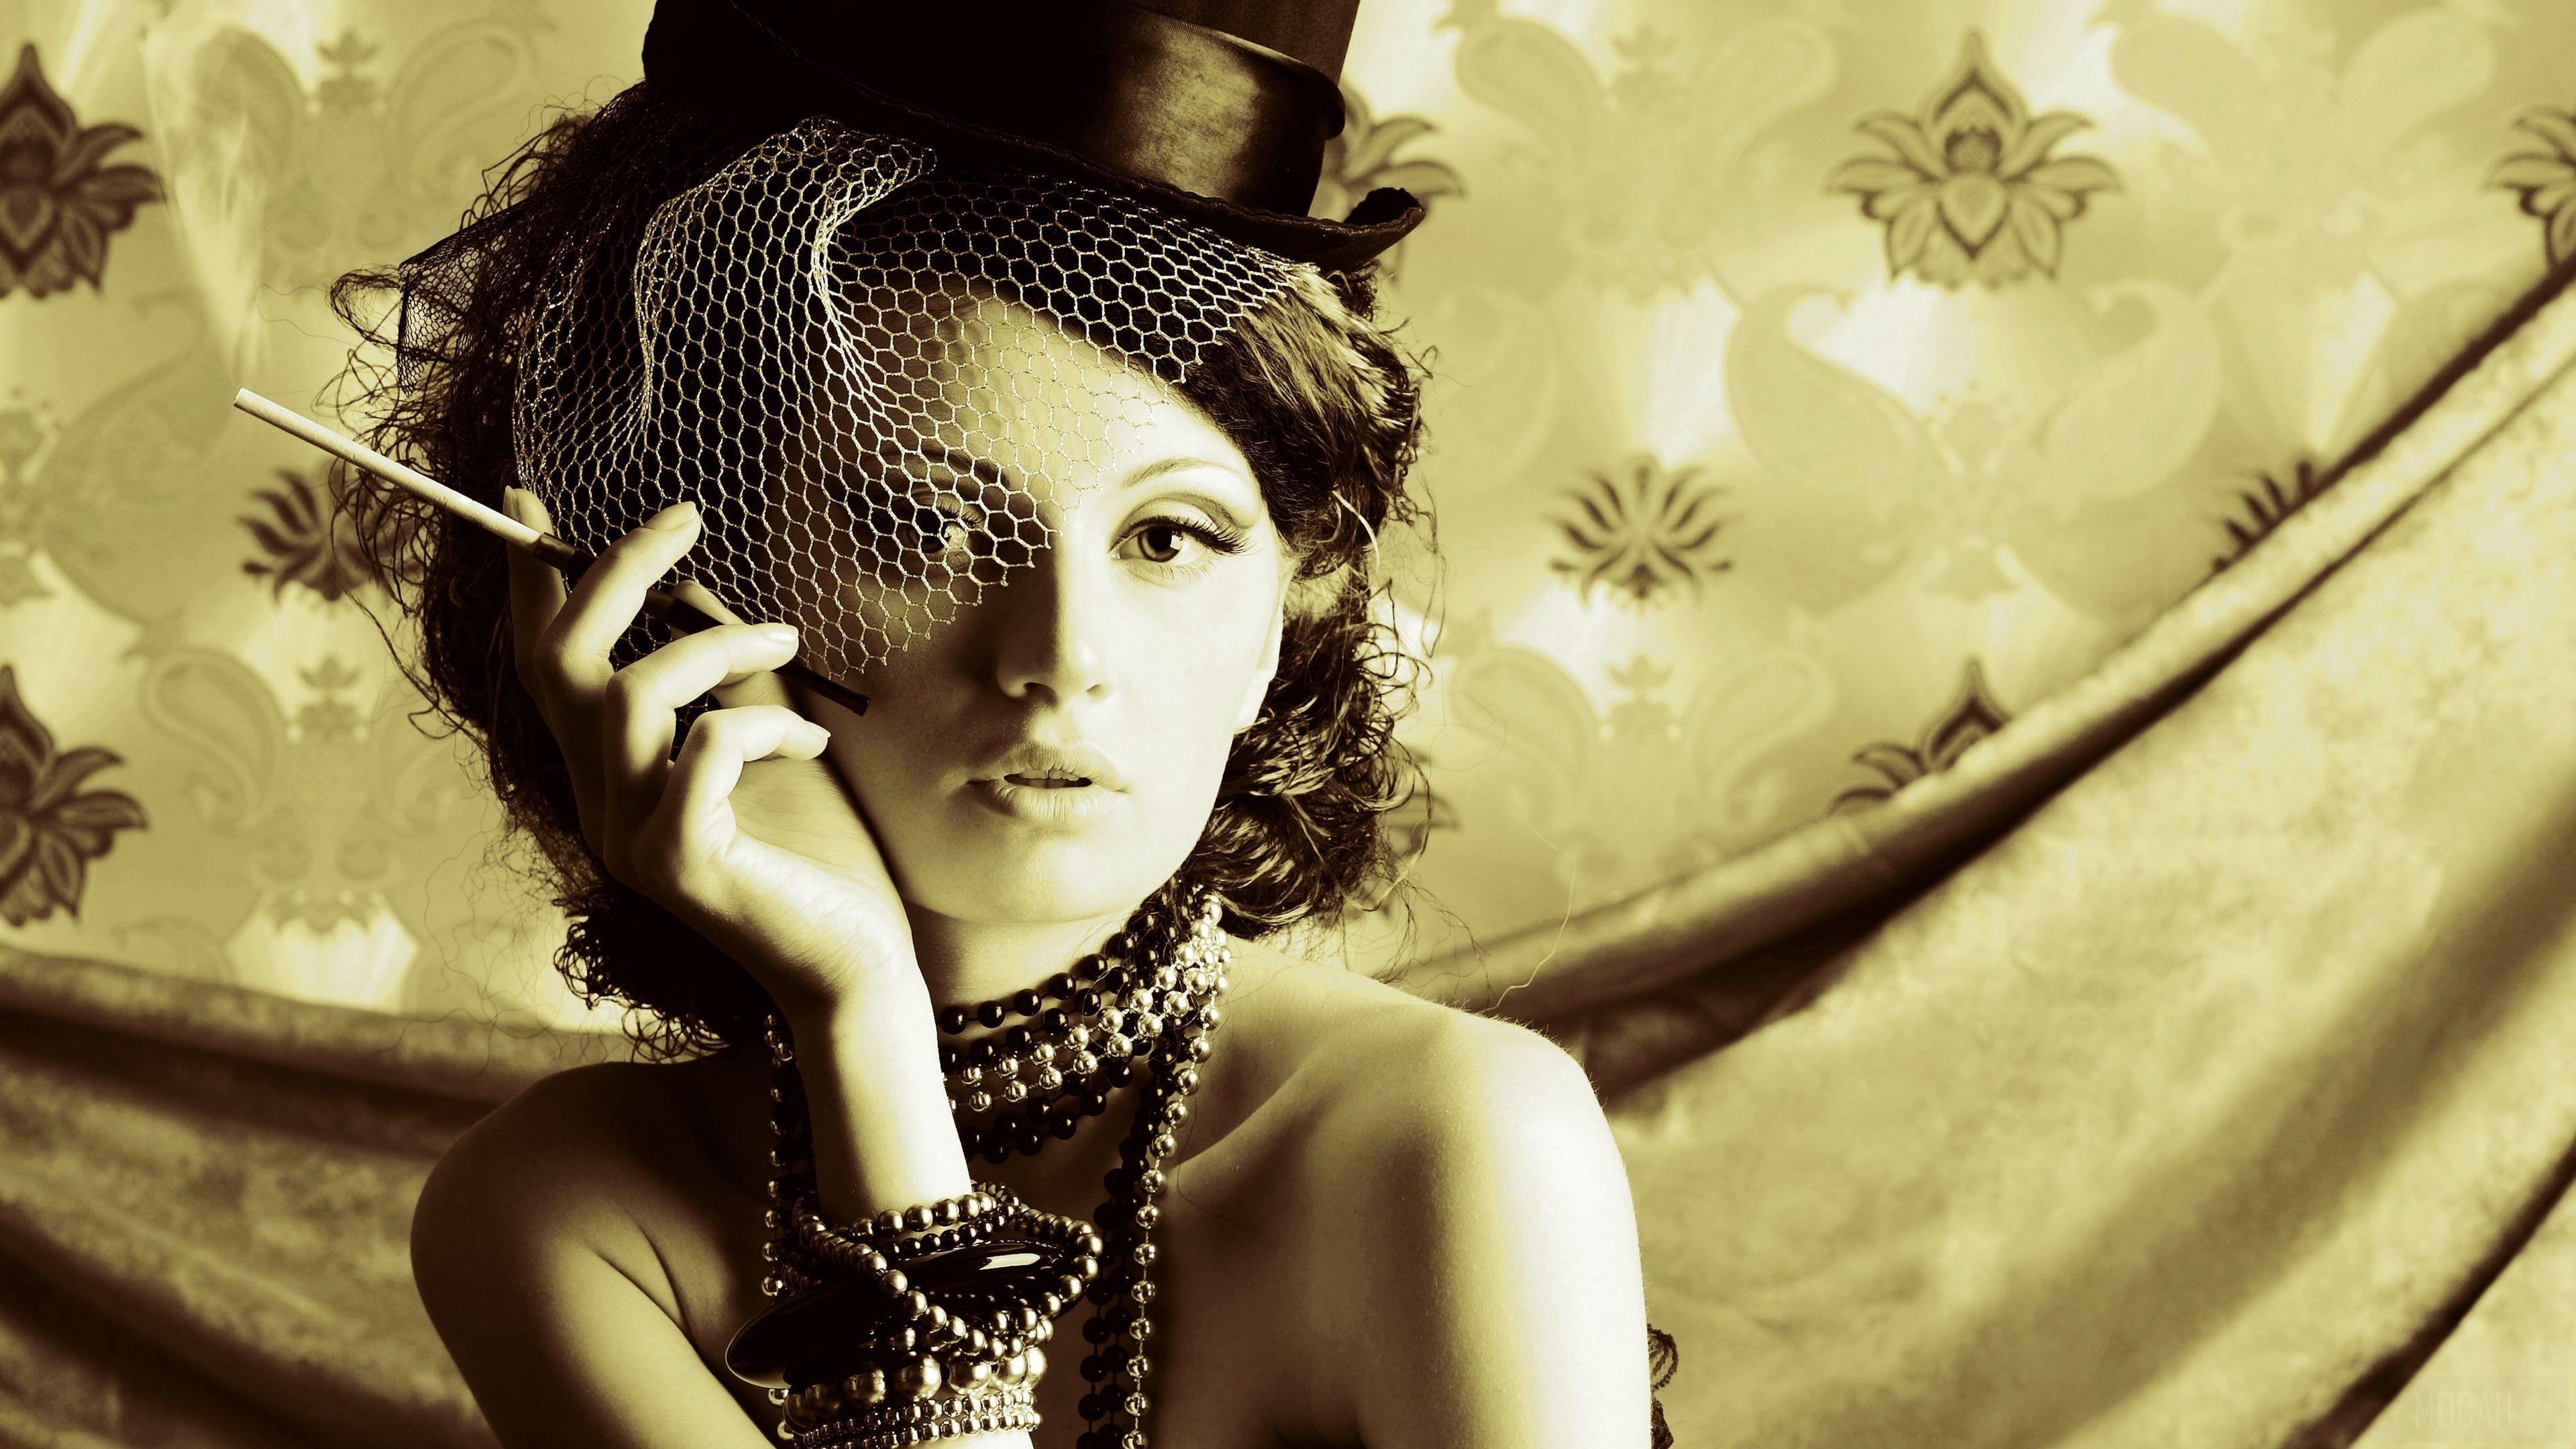 HD wallpaper, Woman 4K, Smoking, Hat, Bracelet, Vintage, Jewelry, Brunette, Necklace, Model